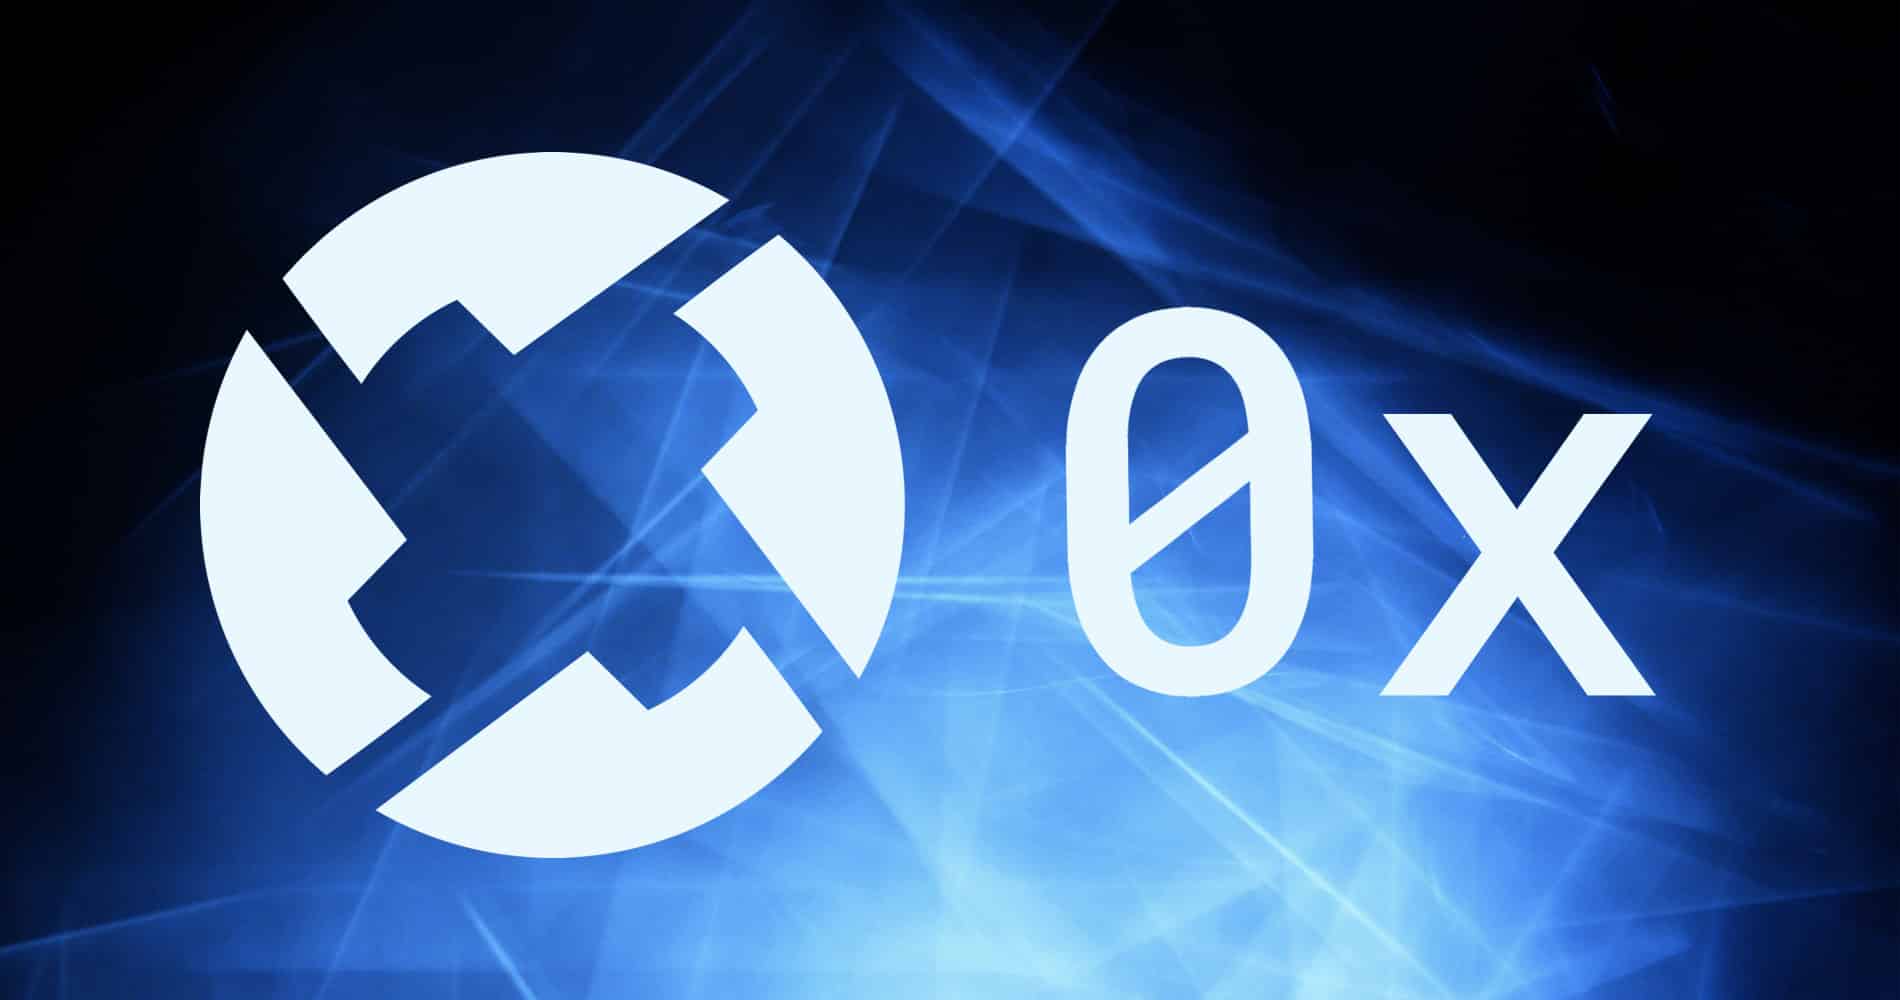 0x (ZRX) étend son partenariat avec Celo pour allouer 4,5 millions de dollars à l’écosystème DAO